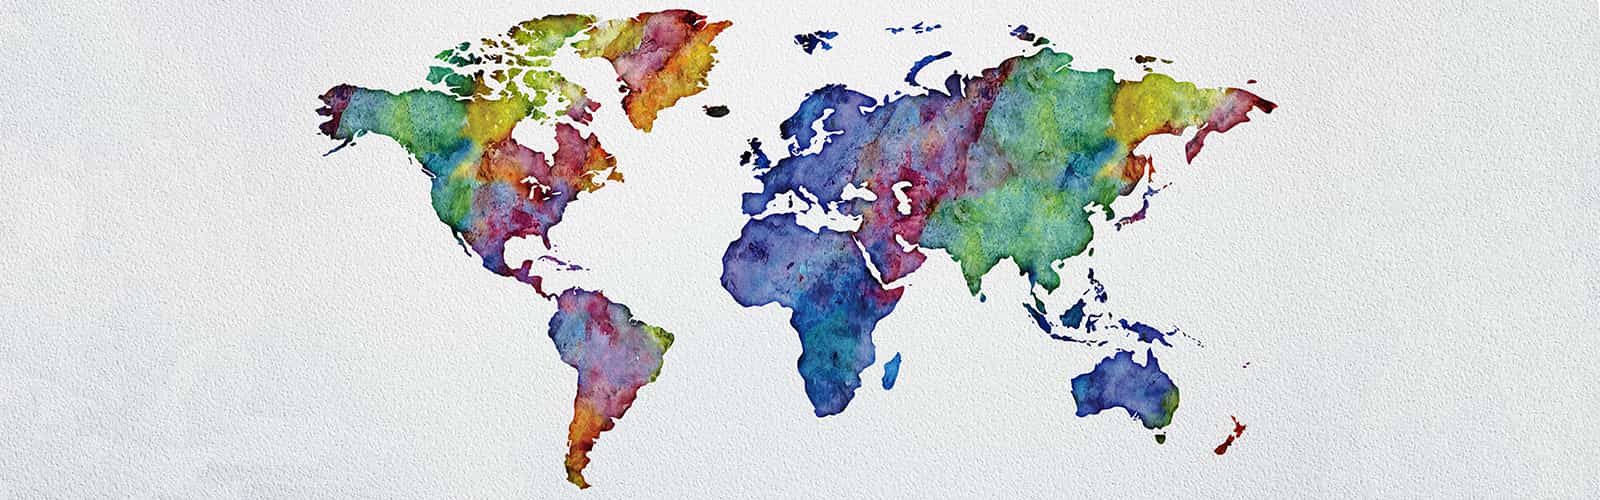 Farbig gestaltete Weltkarte